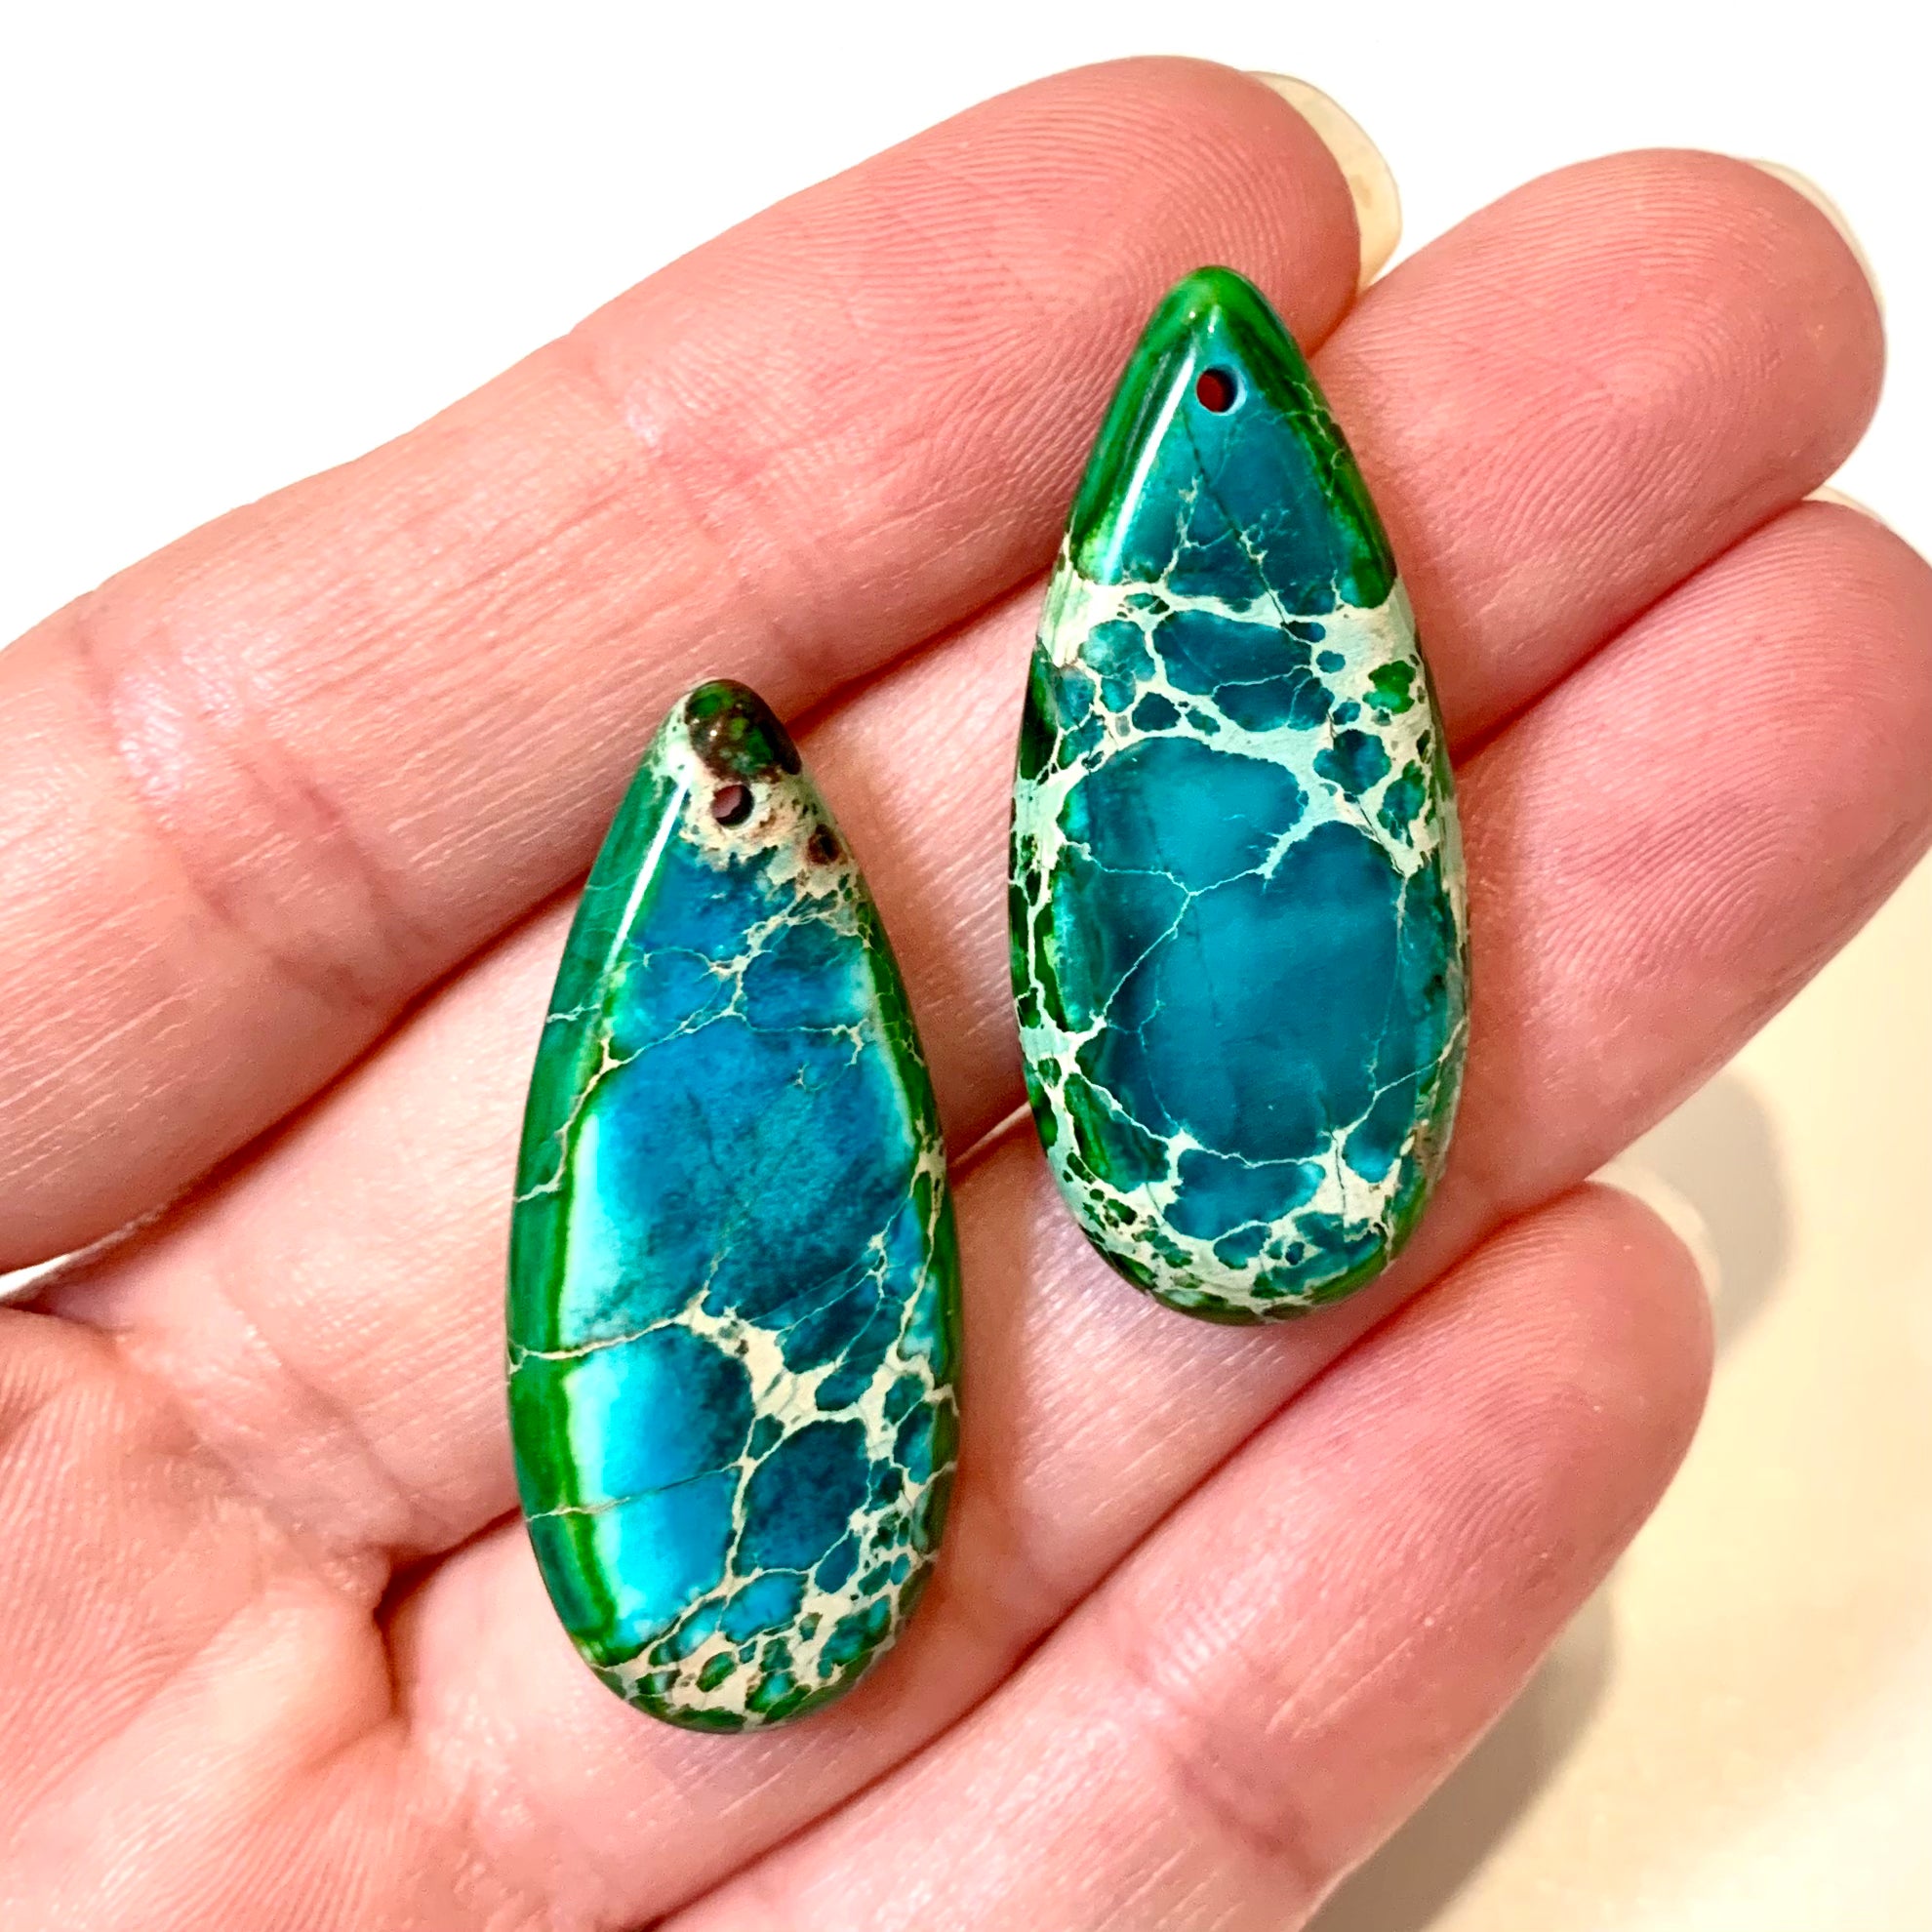 2 Sea Sediment Imperial Jasper Pendants - Blue/Green - Earring Drops - Teardrop Earring Pair/2 Pieces